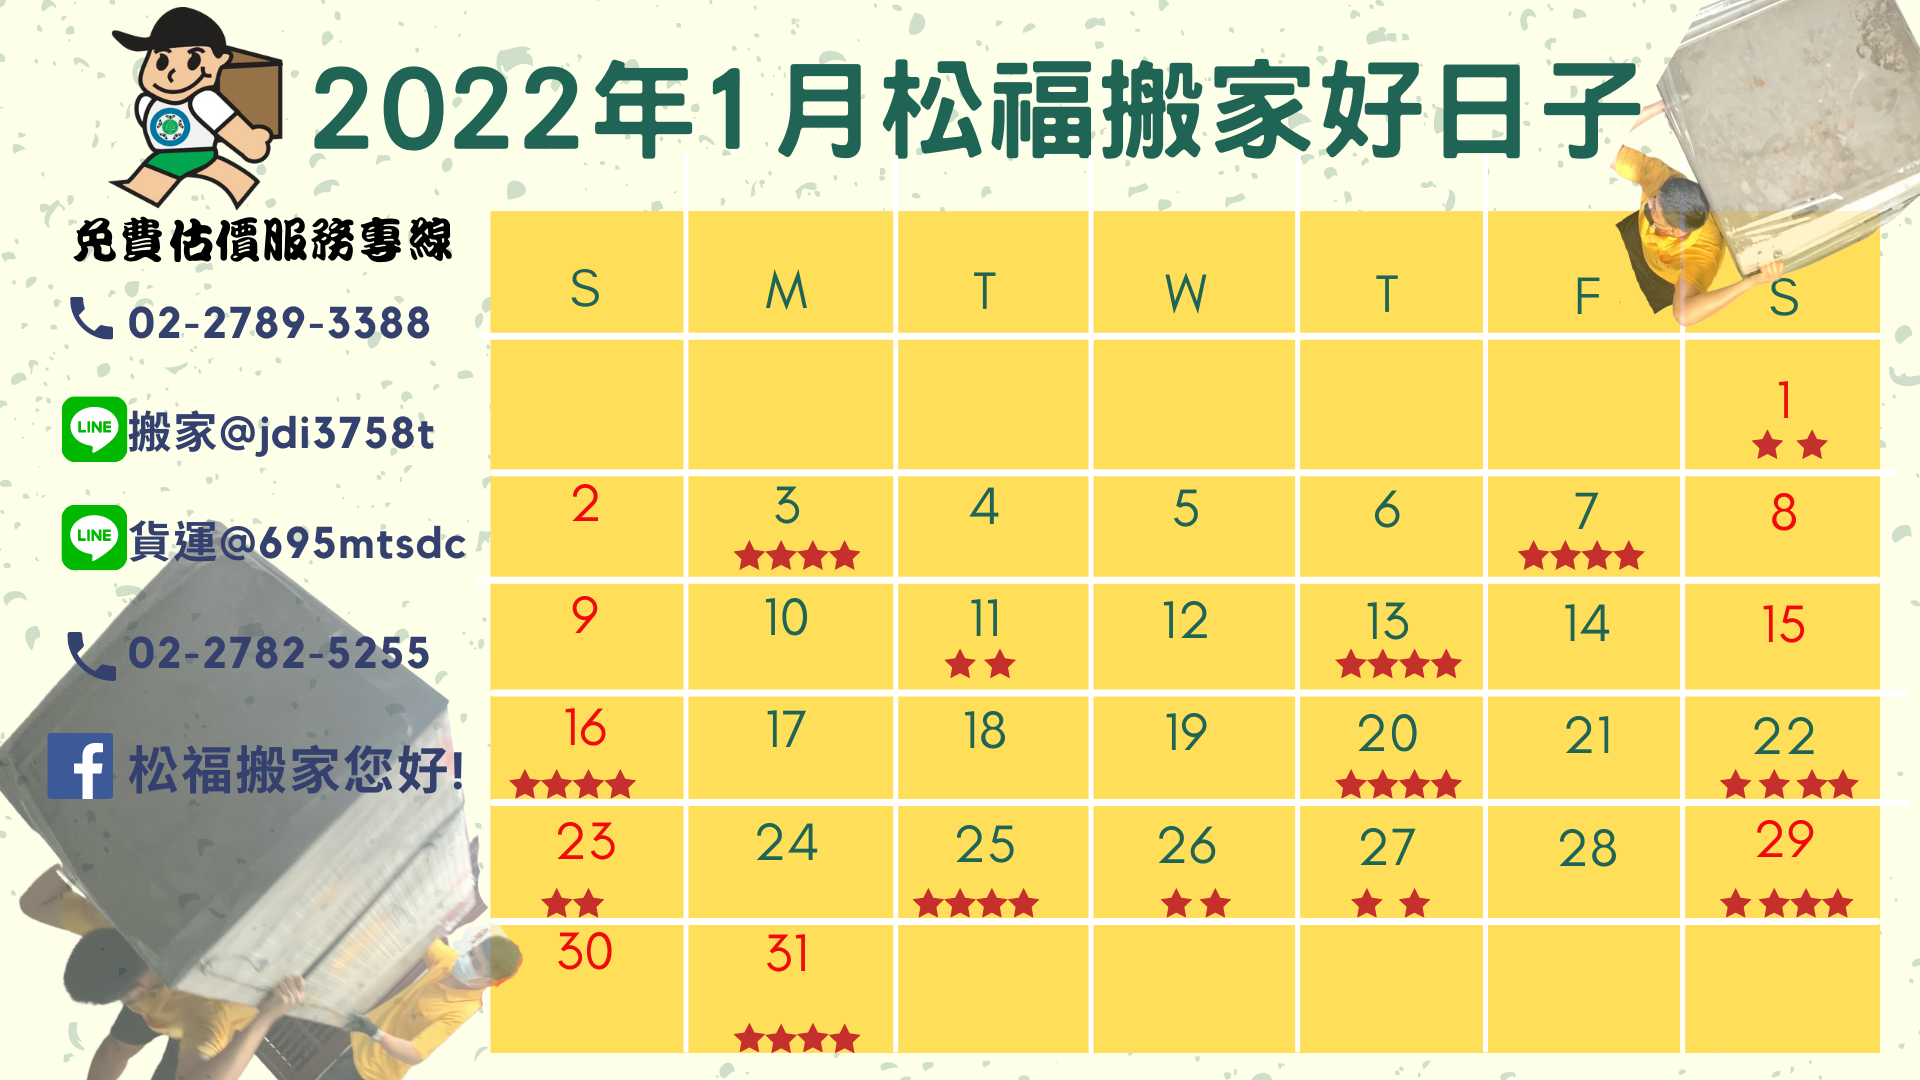 『2022年1月搬家好日子』請找松福搬家公司, 推薦台北搬家、公司搬遷、精緻搬家、免動手打包搬家推薦優質首選!